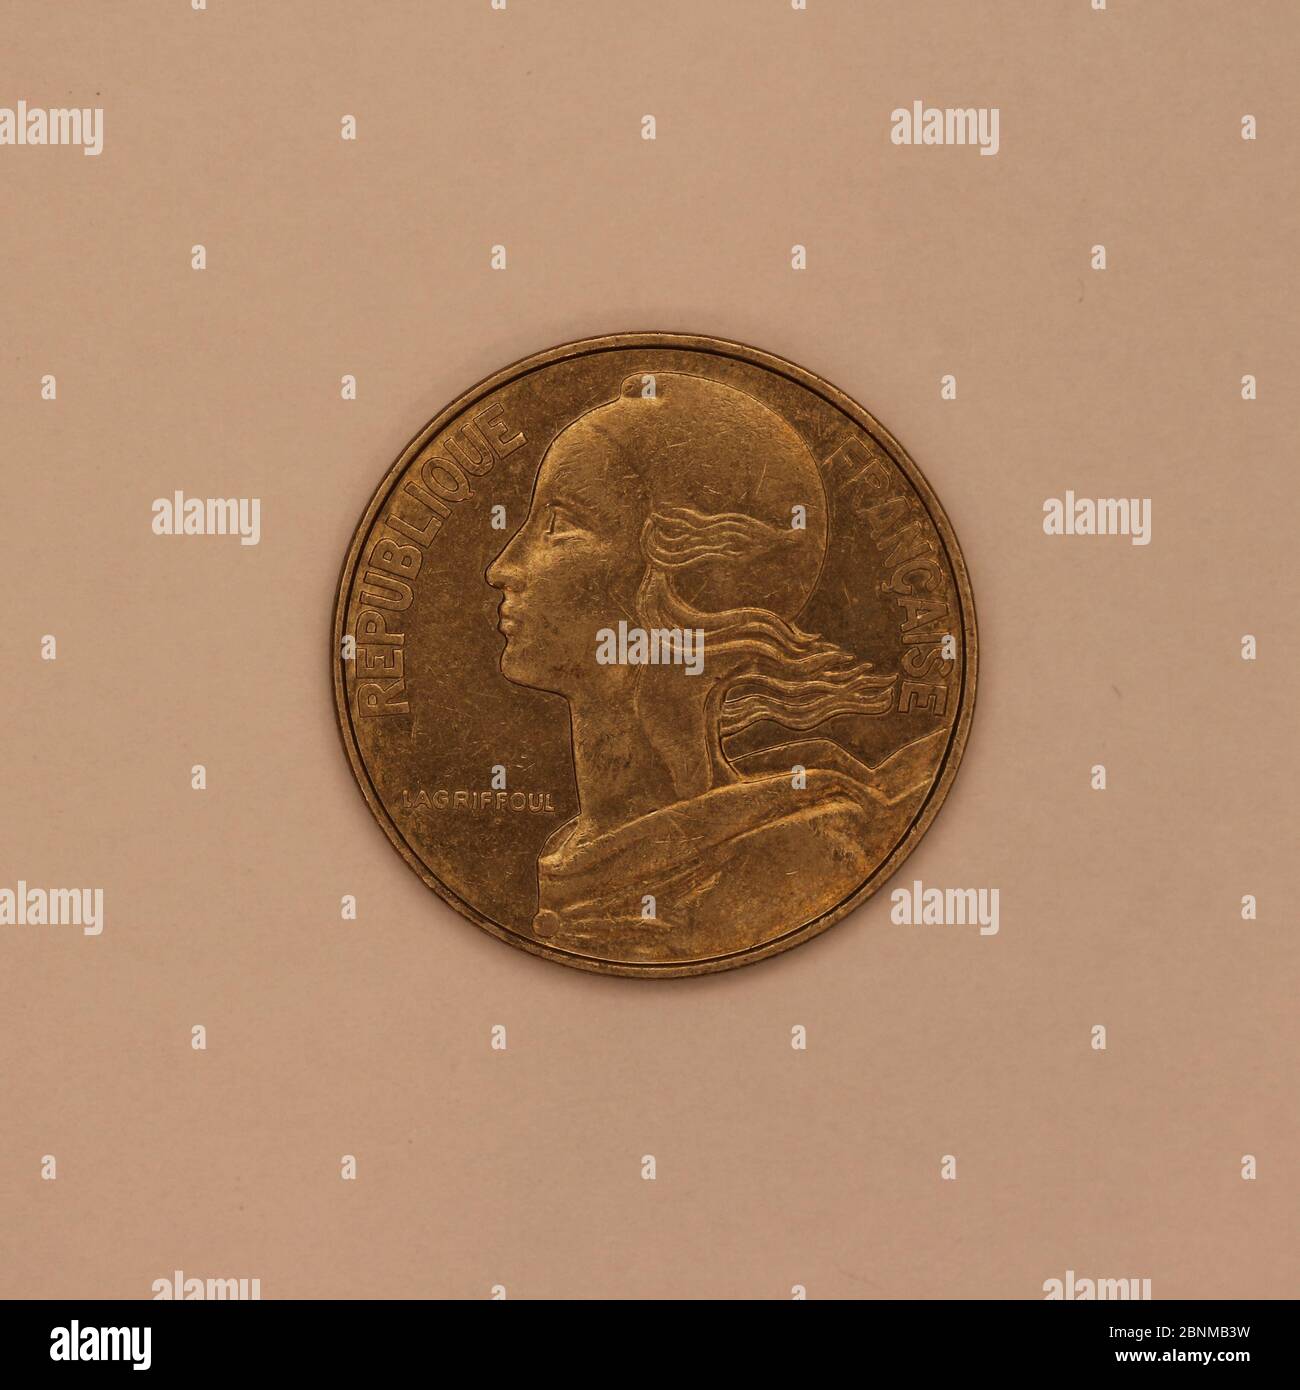 Nahaufnahme einer ehemaligen Französischen 20 centimes-Münze Foto Stock